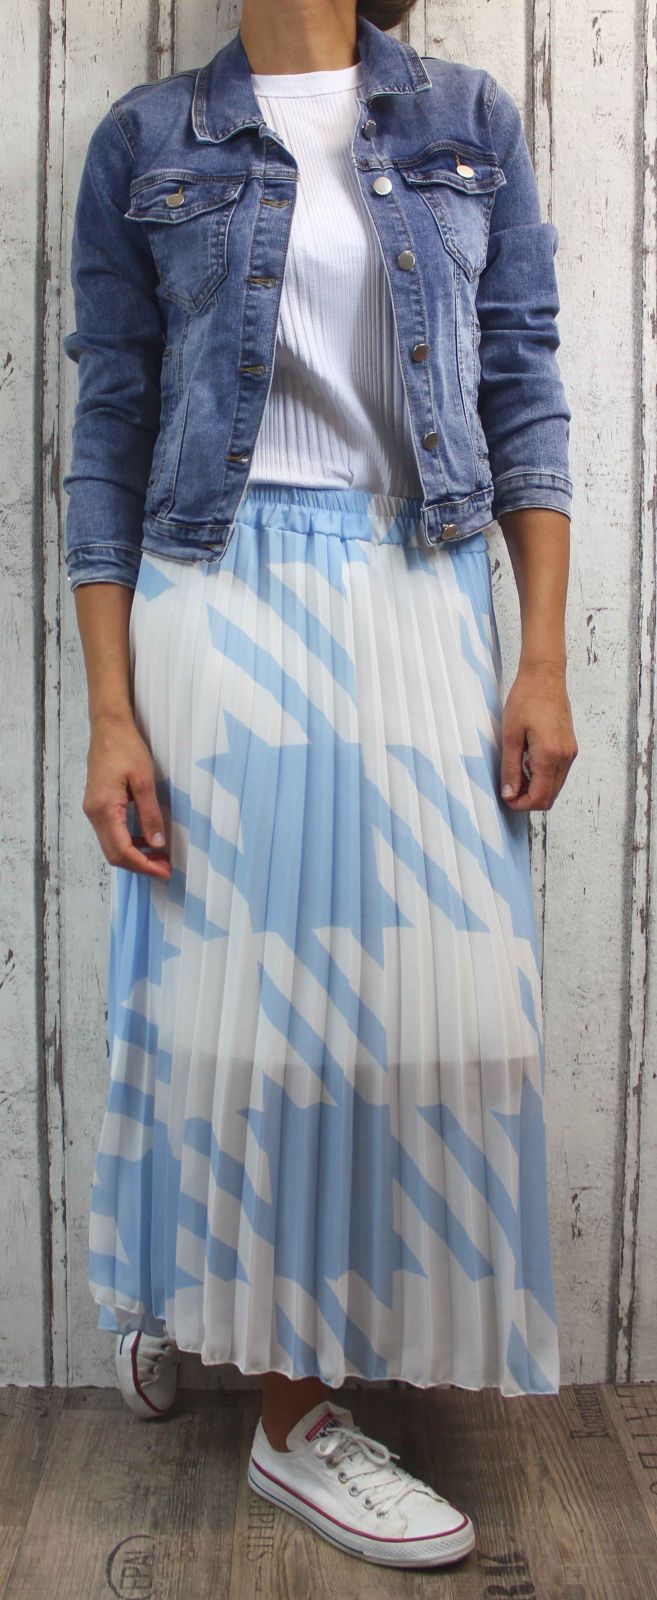 Dámská tylová sukně, tylová sukýnka, dlouhá tylová sukně, dámská dlouhá sukně, modrá tylová sukně, bílá tylová sukně Italy Moda